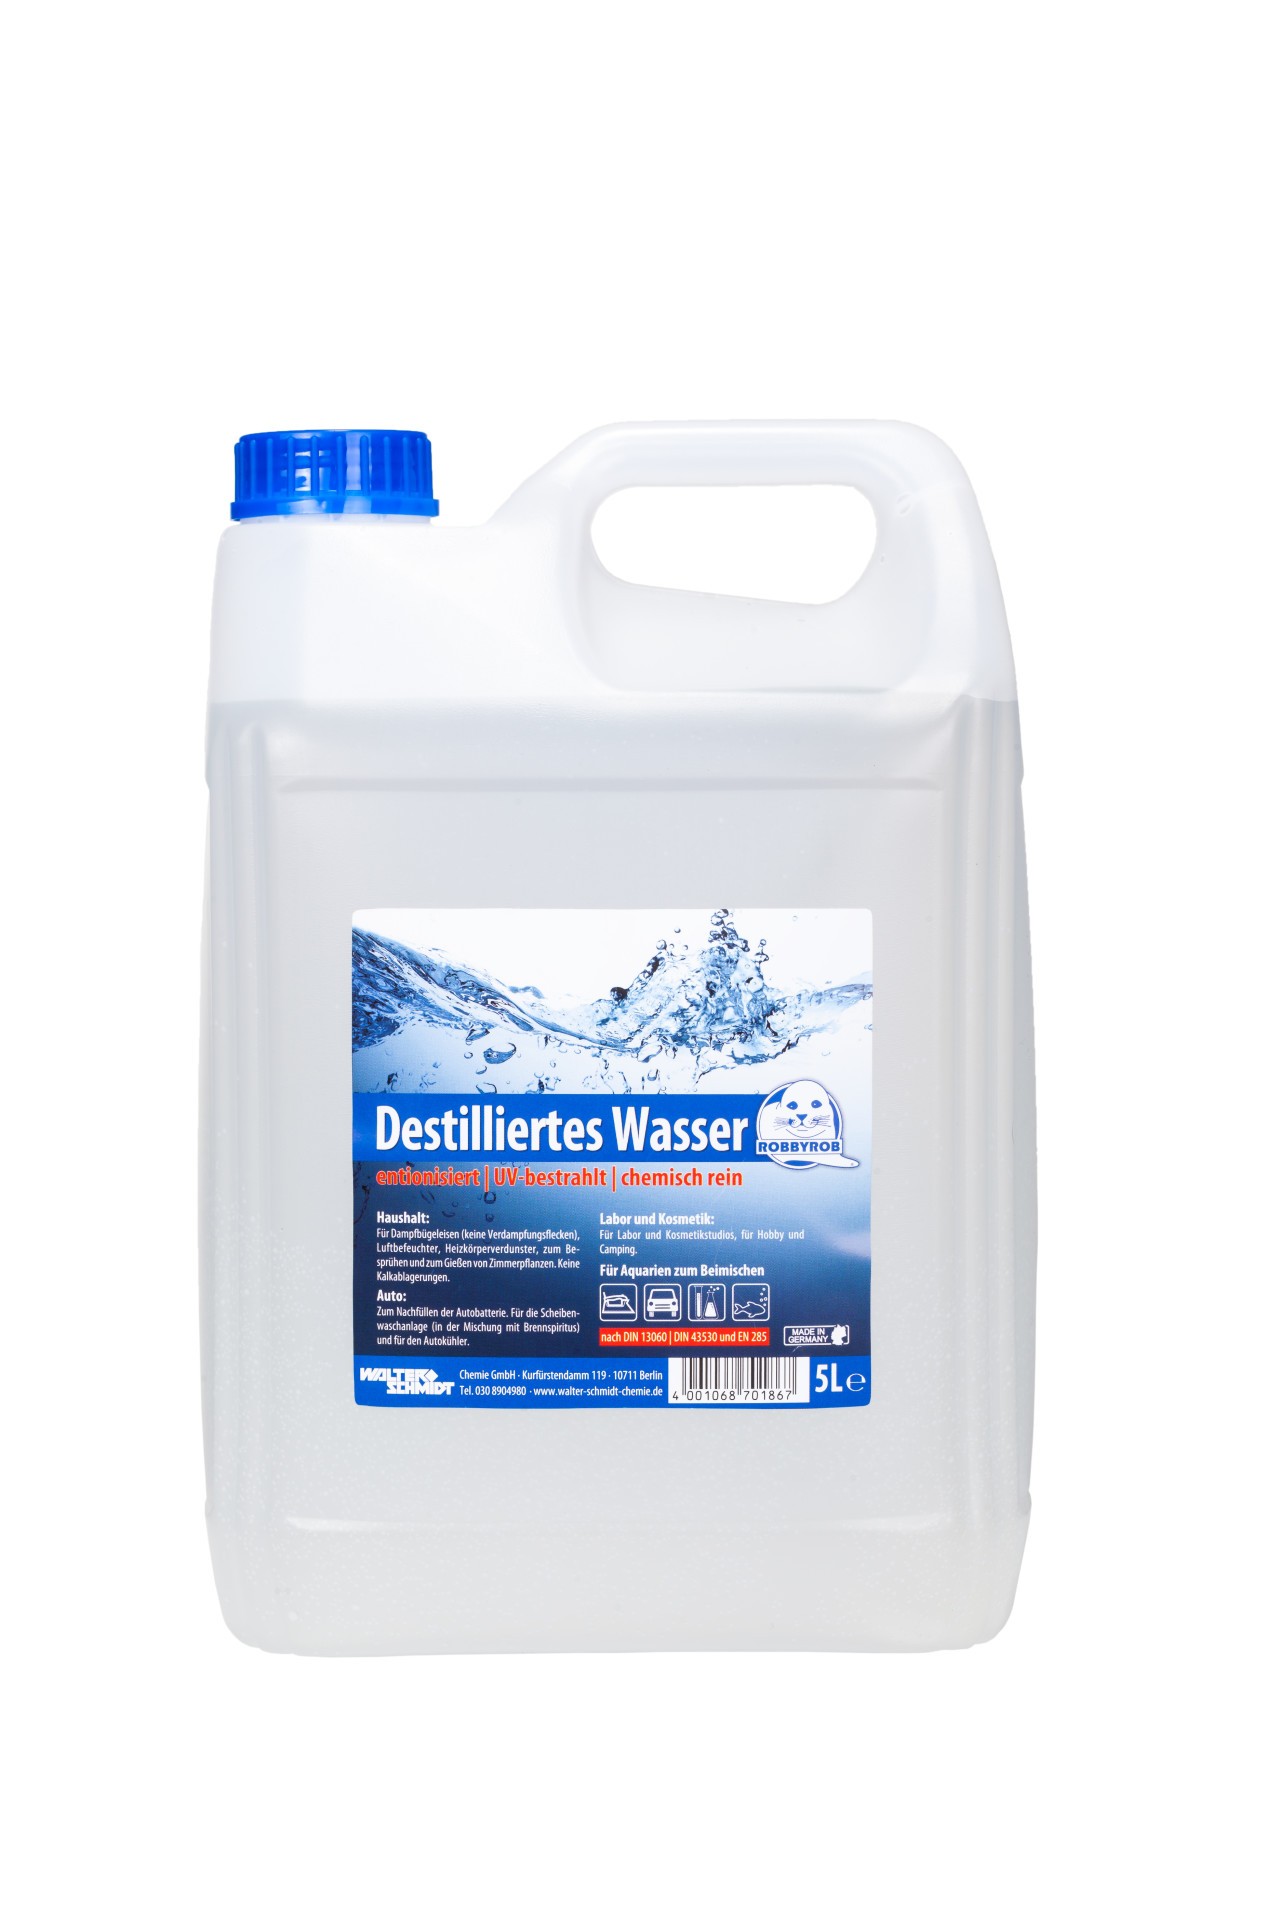 Destilliertes Wasser, demineralisiert & rein